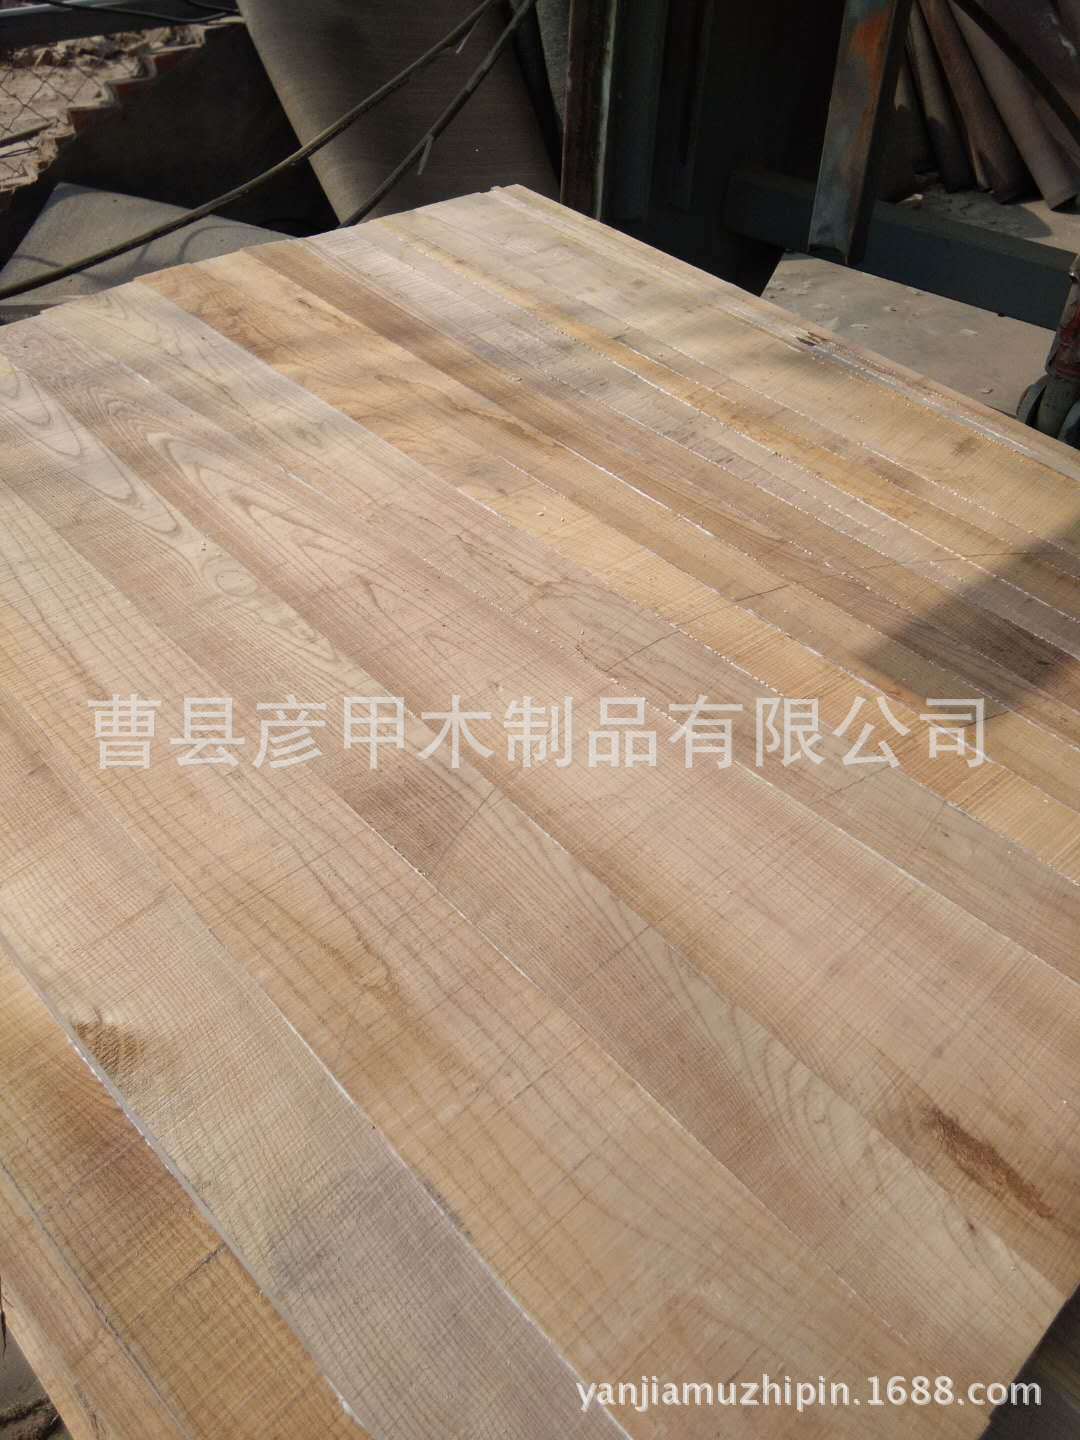 实木板材厂家直销 梓木拼板 规格齐全价格优惠  欢迎惠顾